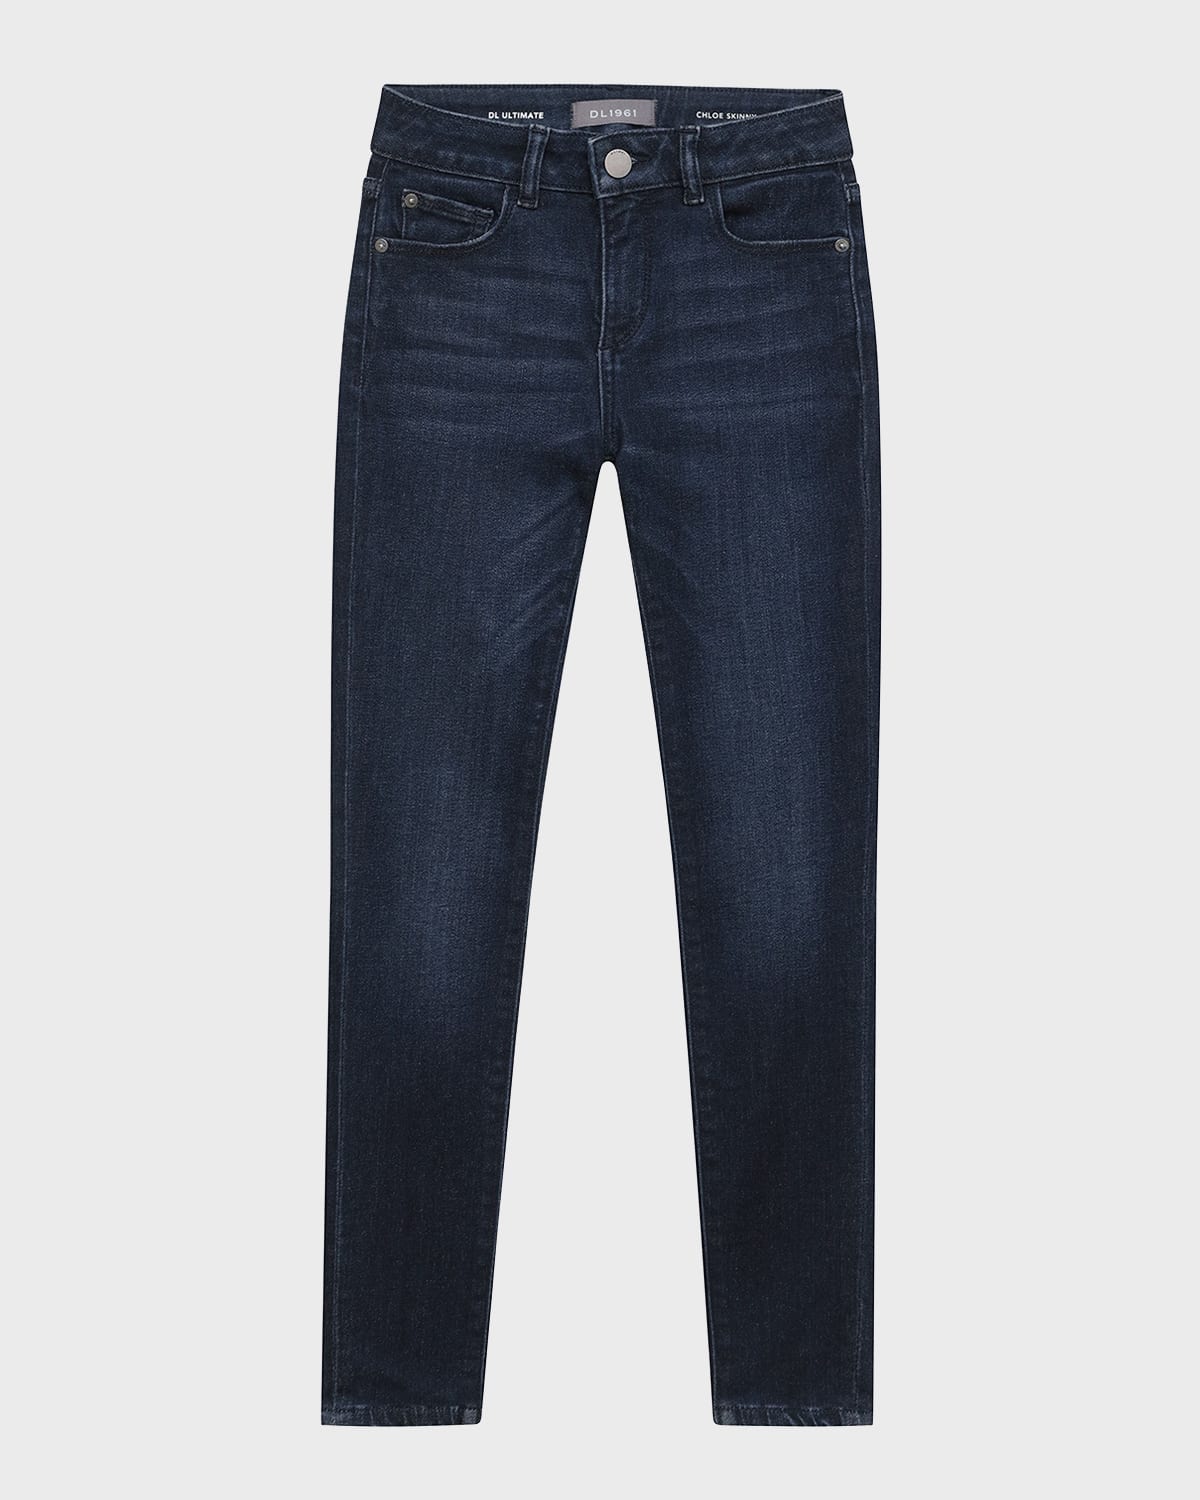 Shop Dl Premium Denim Girl's Chloe Skinny Jeans In Dark Indigo